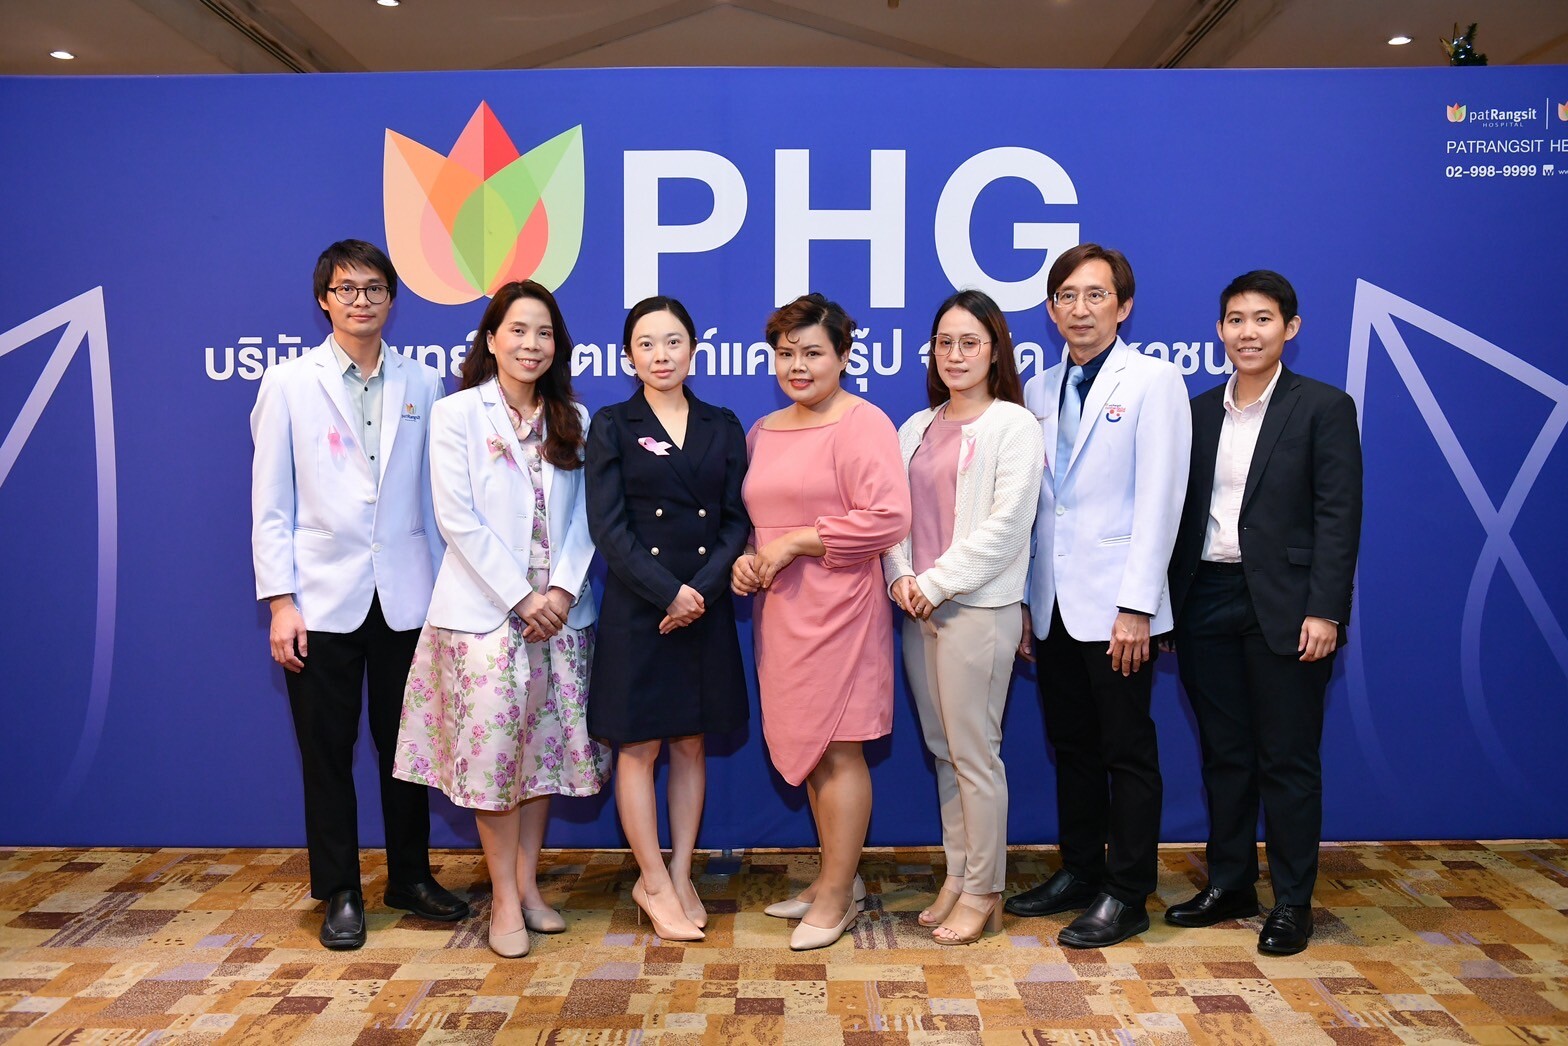 PHG ประสบความสำเร็จรักษาผู้ป่วยเนื้องอกมดลูกโดยไม่ต้องผ่าตัดด้วยเทคโนโลยี HIFU